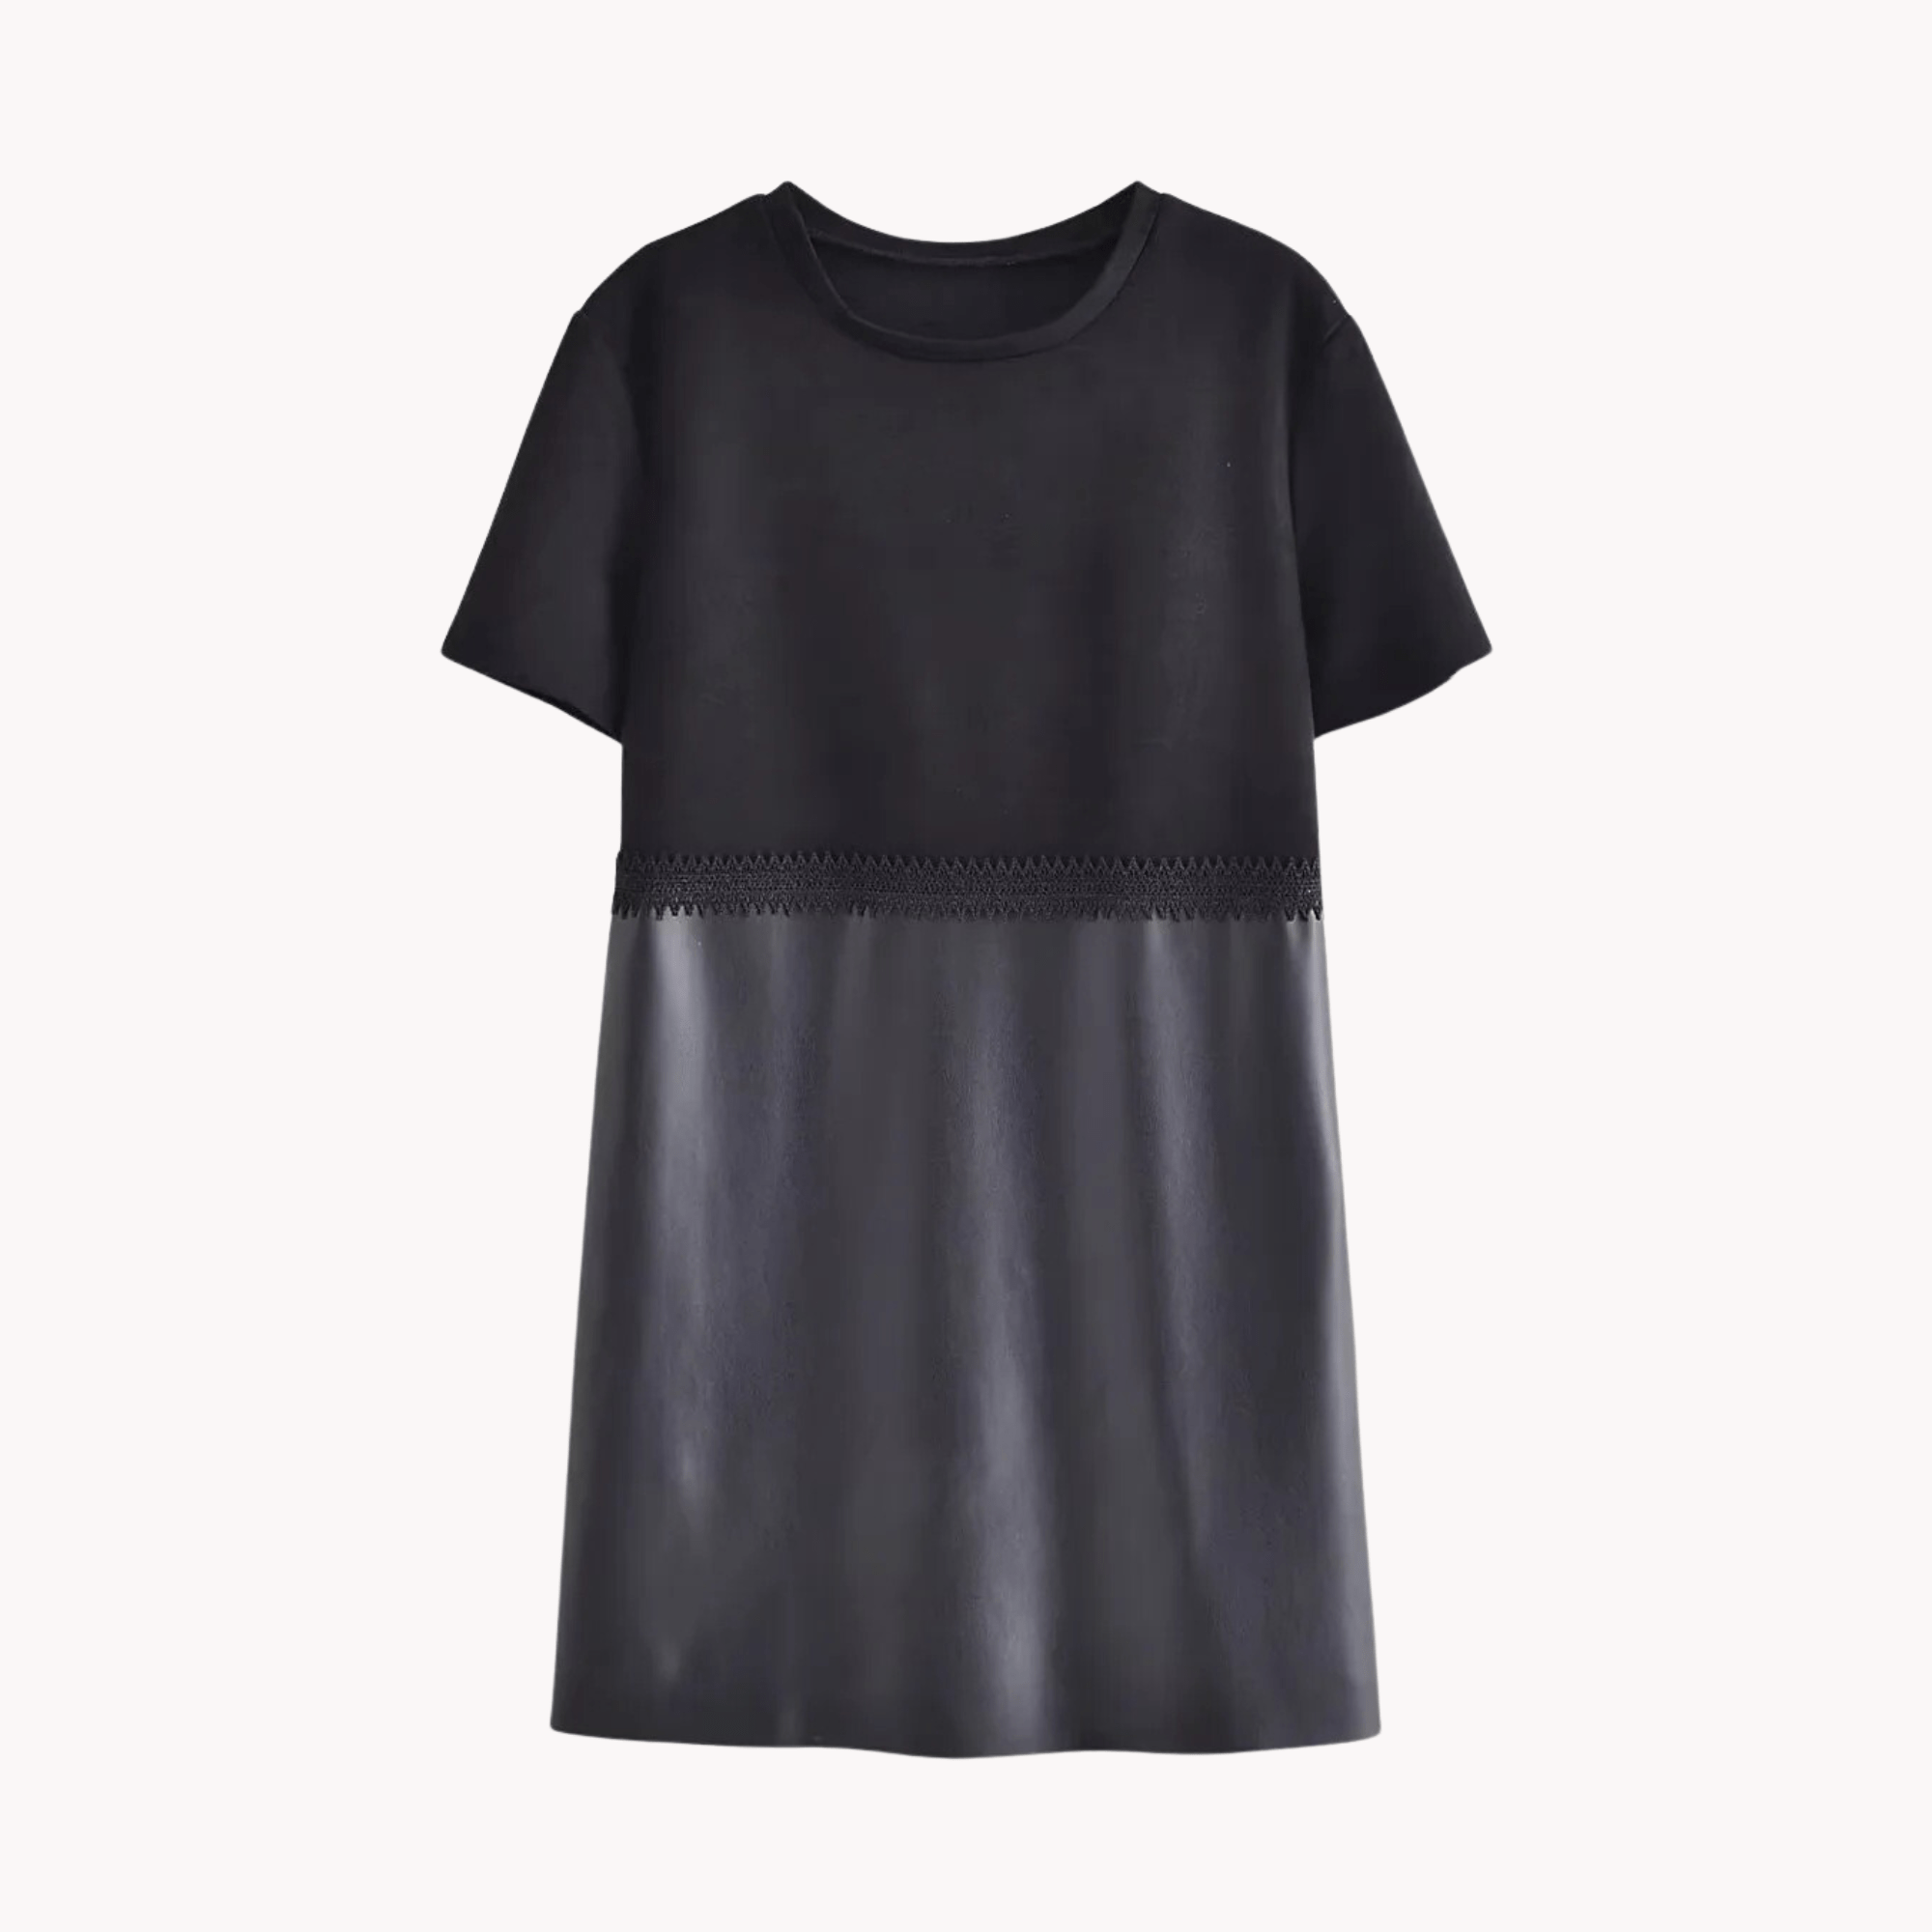 Lace Vegan Leather Mini Shirt Dress - Kelly Obi New York